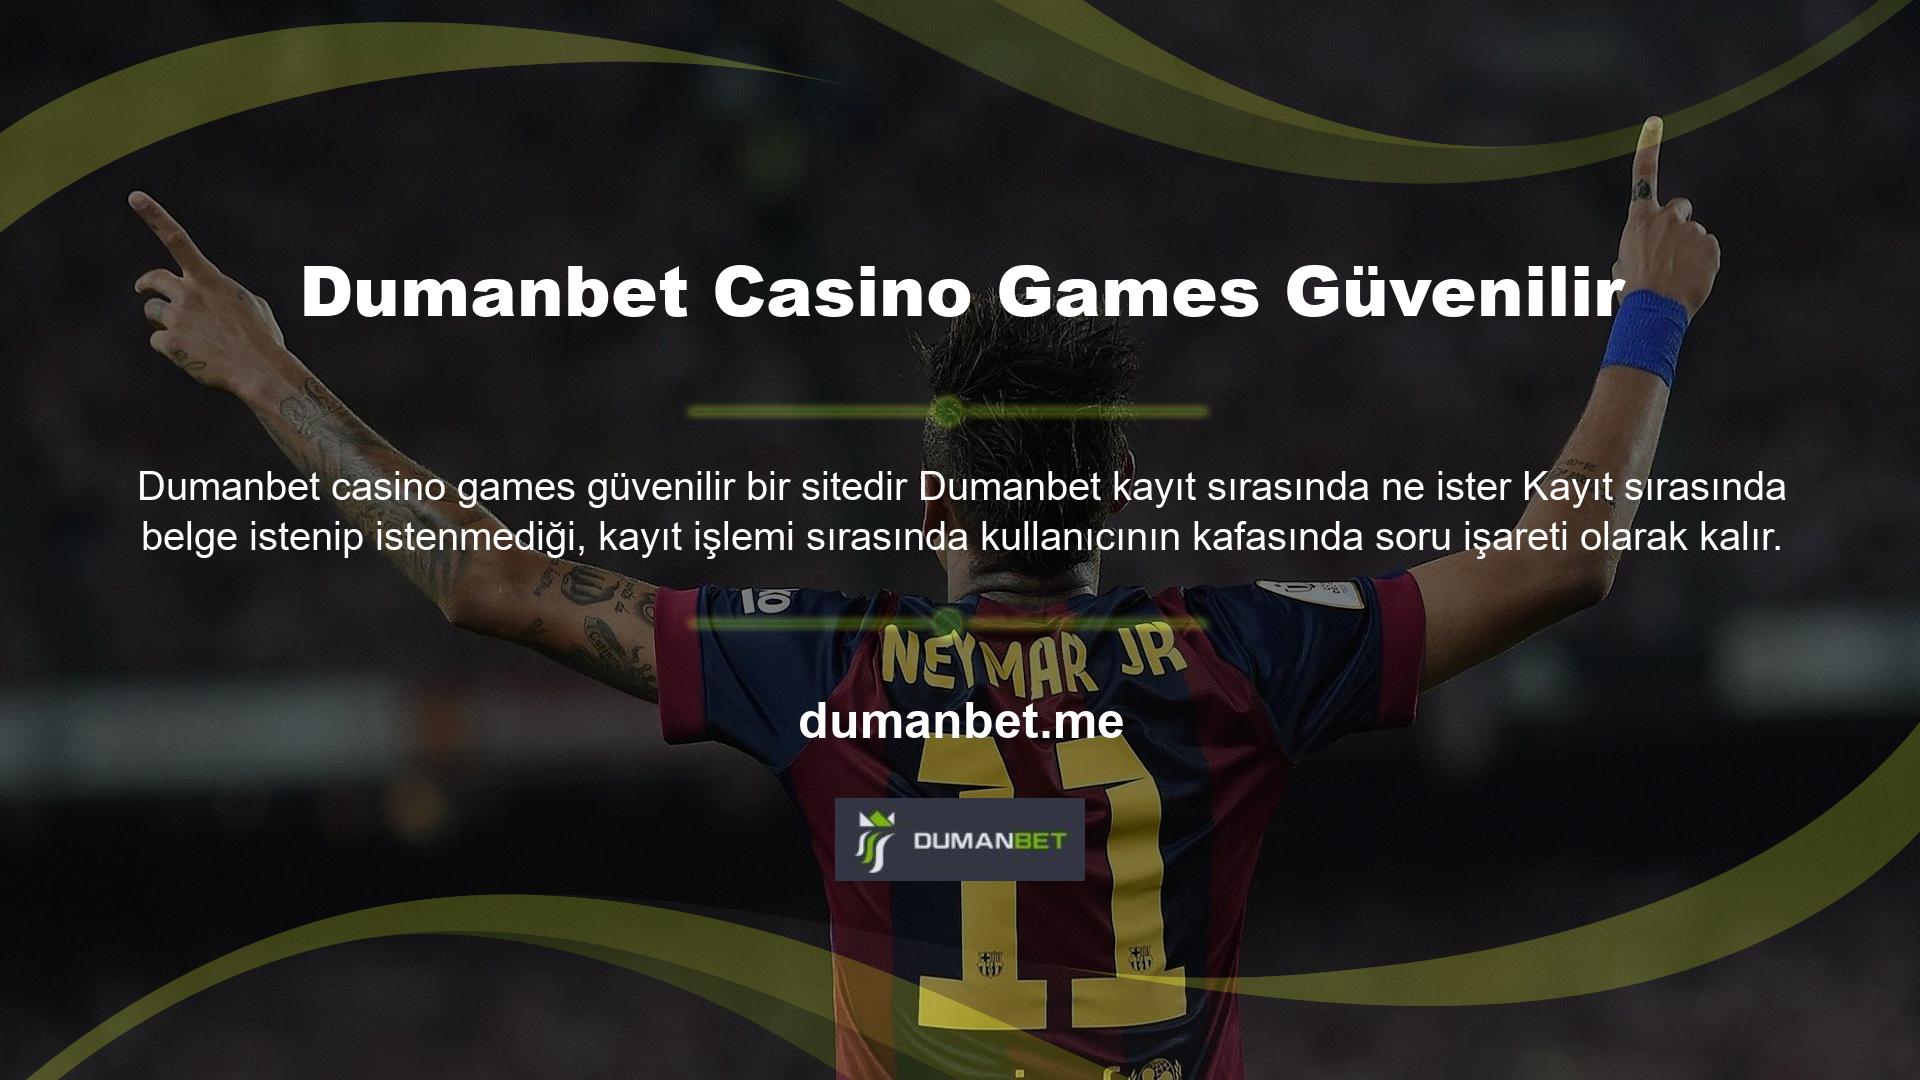 Dumanbet Casino Games güvenilir bir site mi Bu ilginç soruyla ilgili özel sorular ve veriler kayıtta bulunabilir